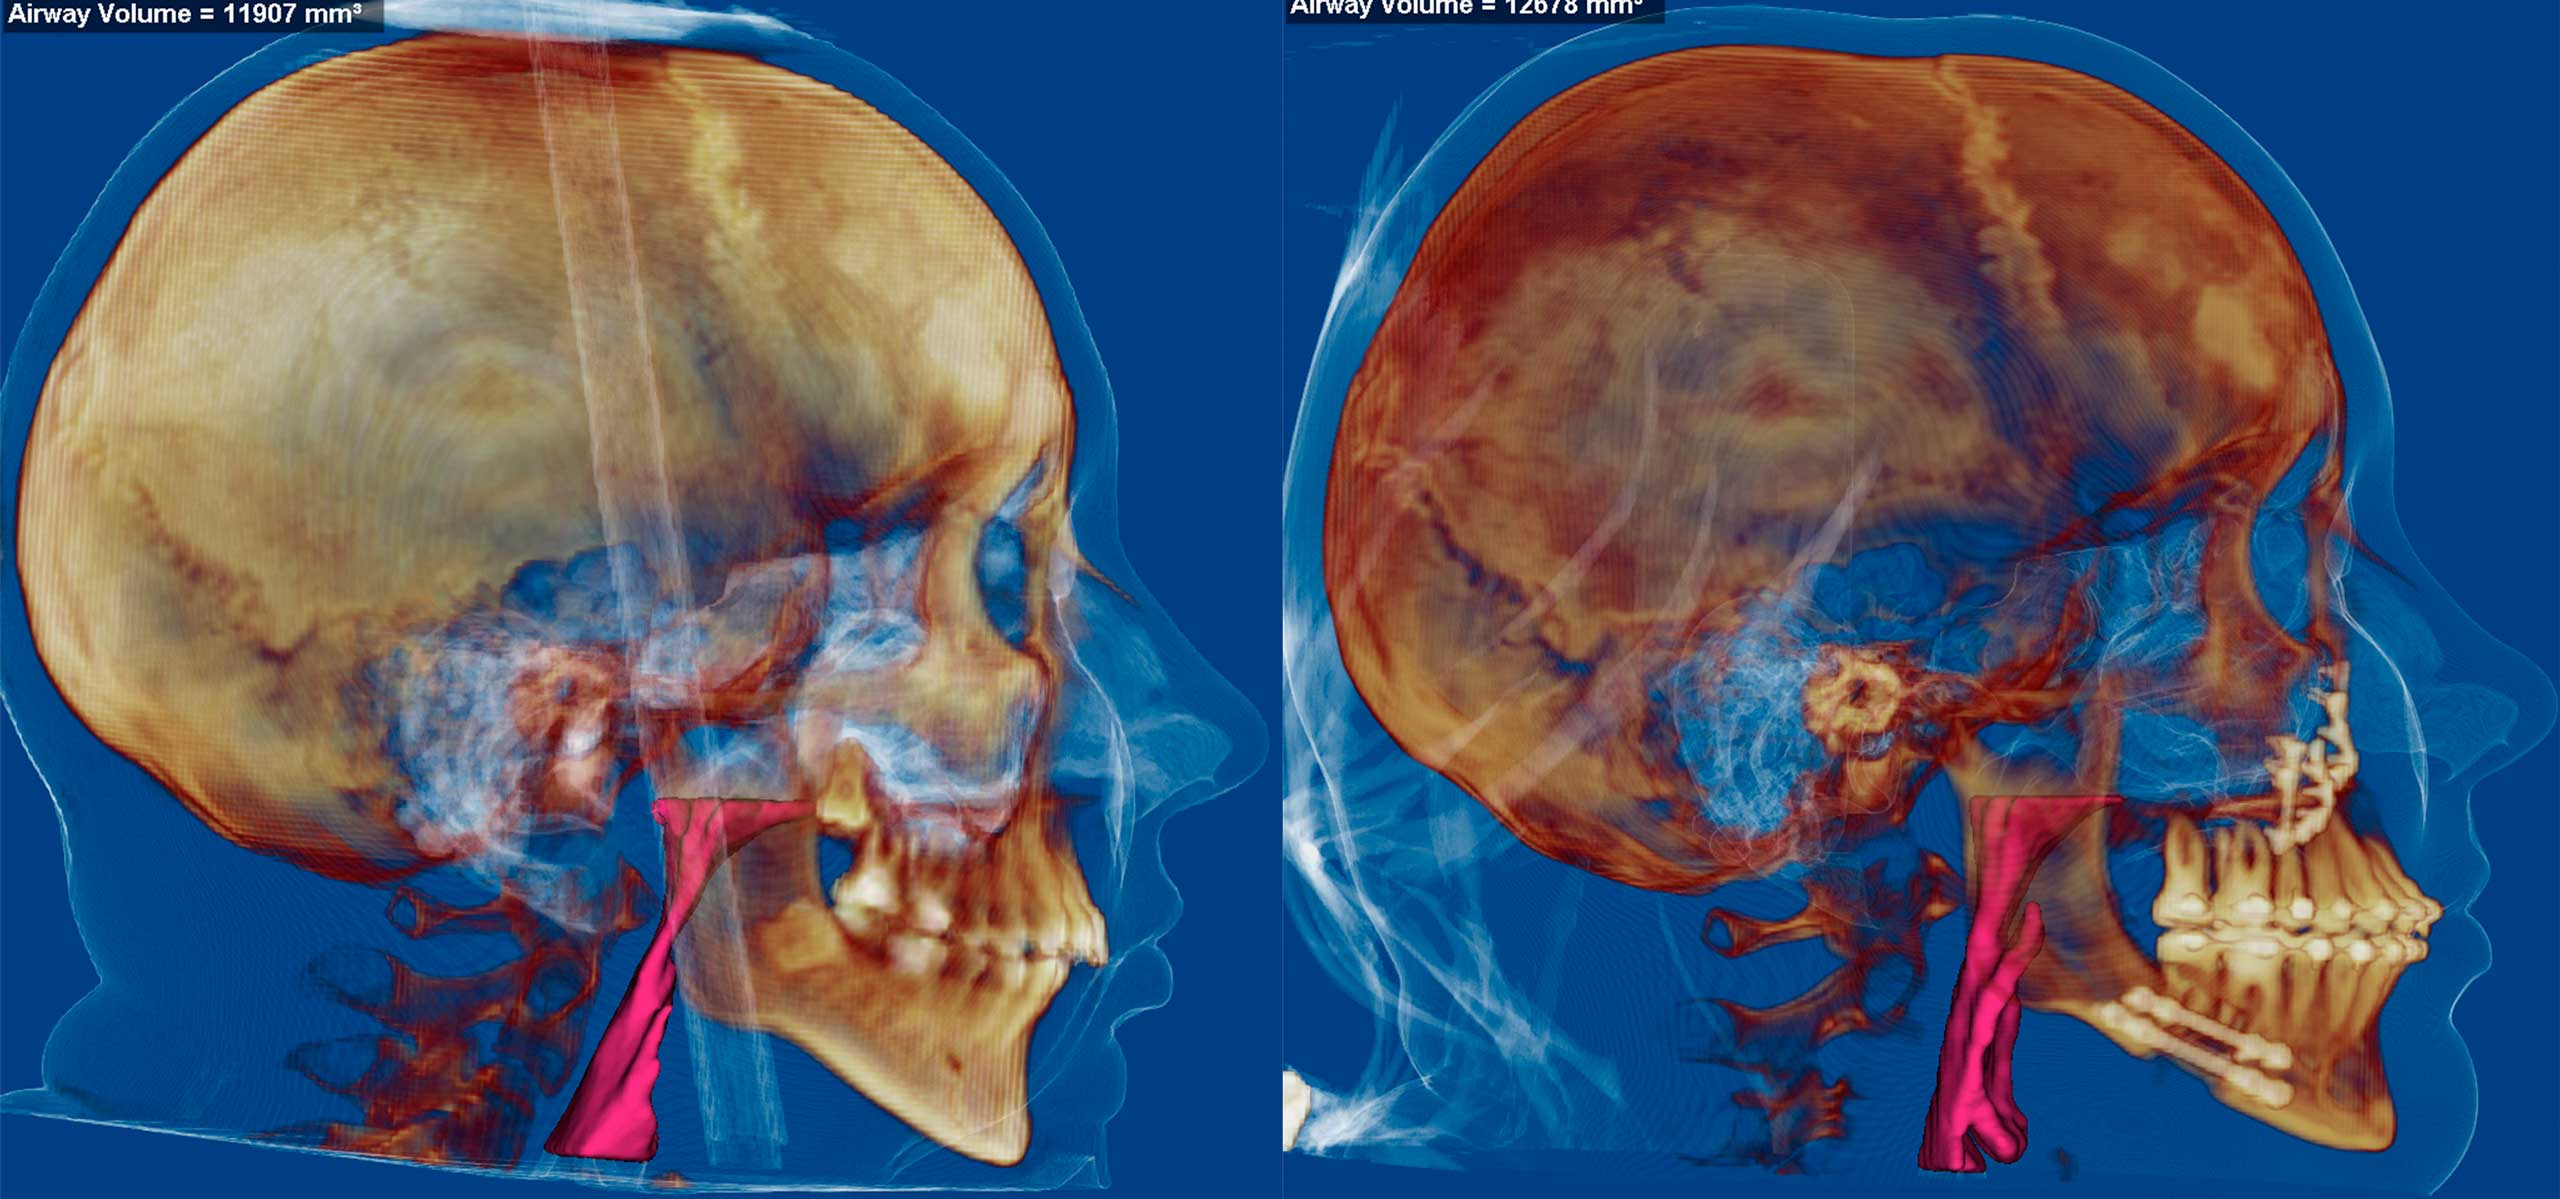 Компьютерная томография лицевого скелета до и после ортогнатической операции с остеосинтезом остеотомированных фрагментов.